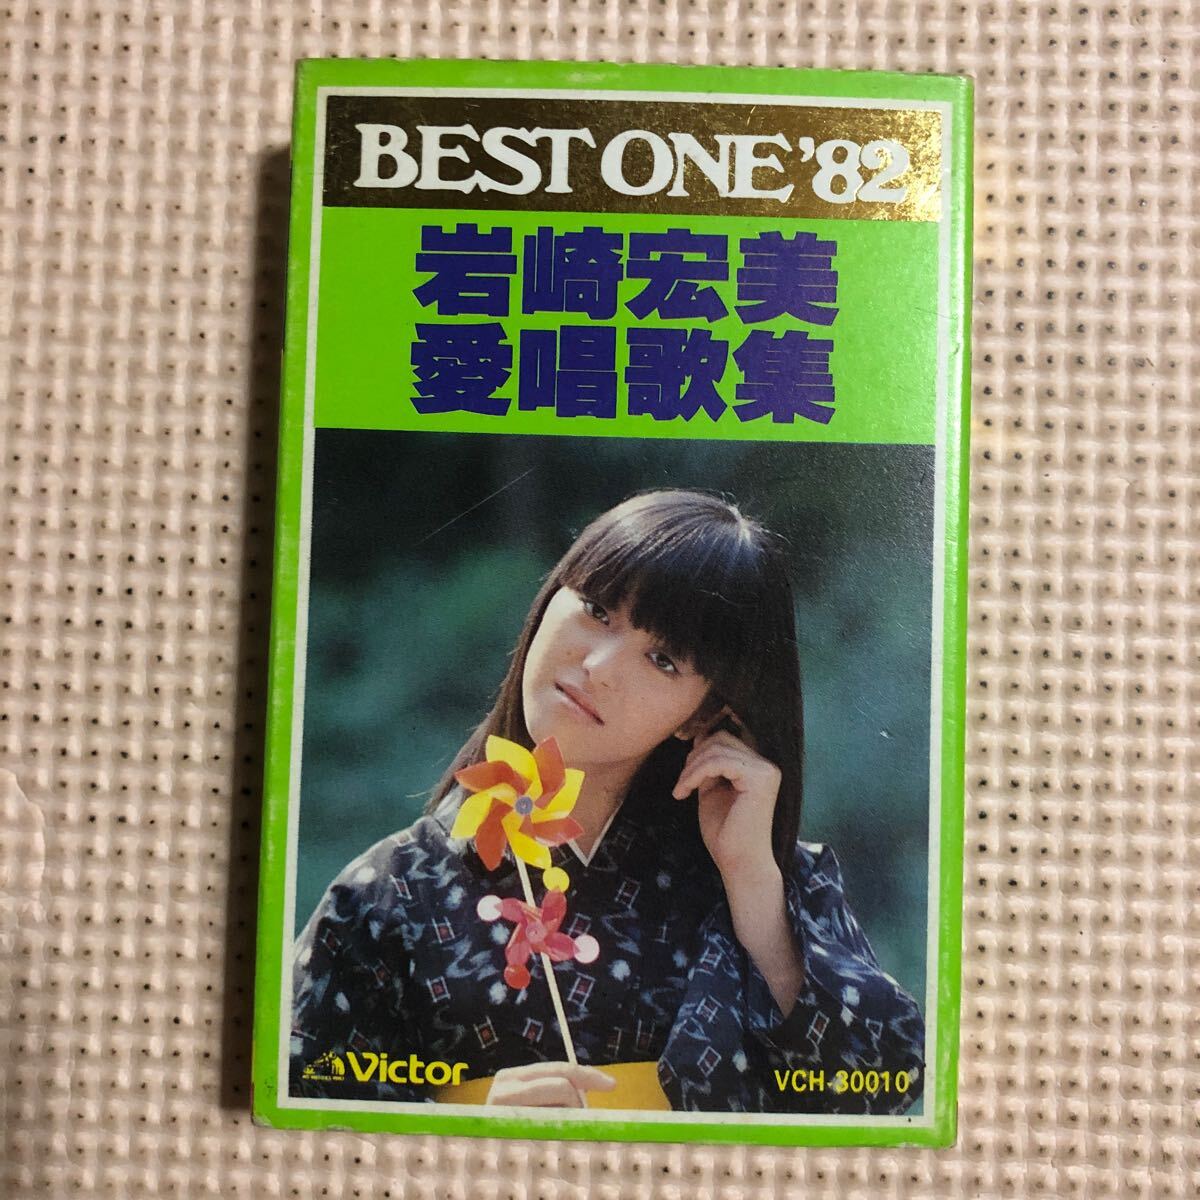 岩崎宏美 愛唱歌集 BES ONE'82 国内盤カセットテープ★の画像1